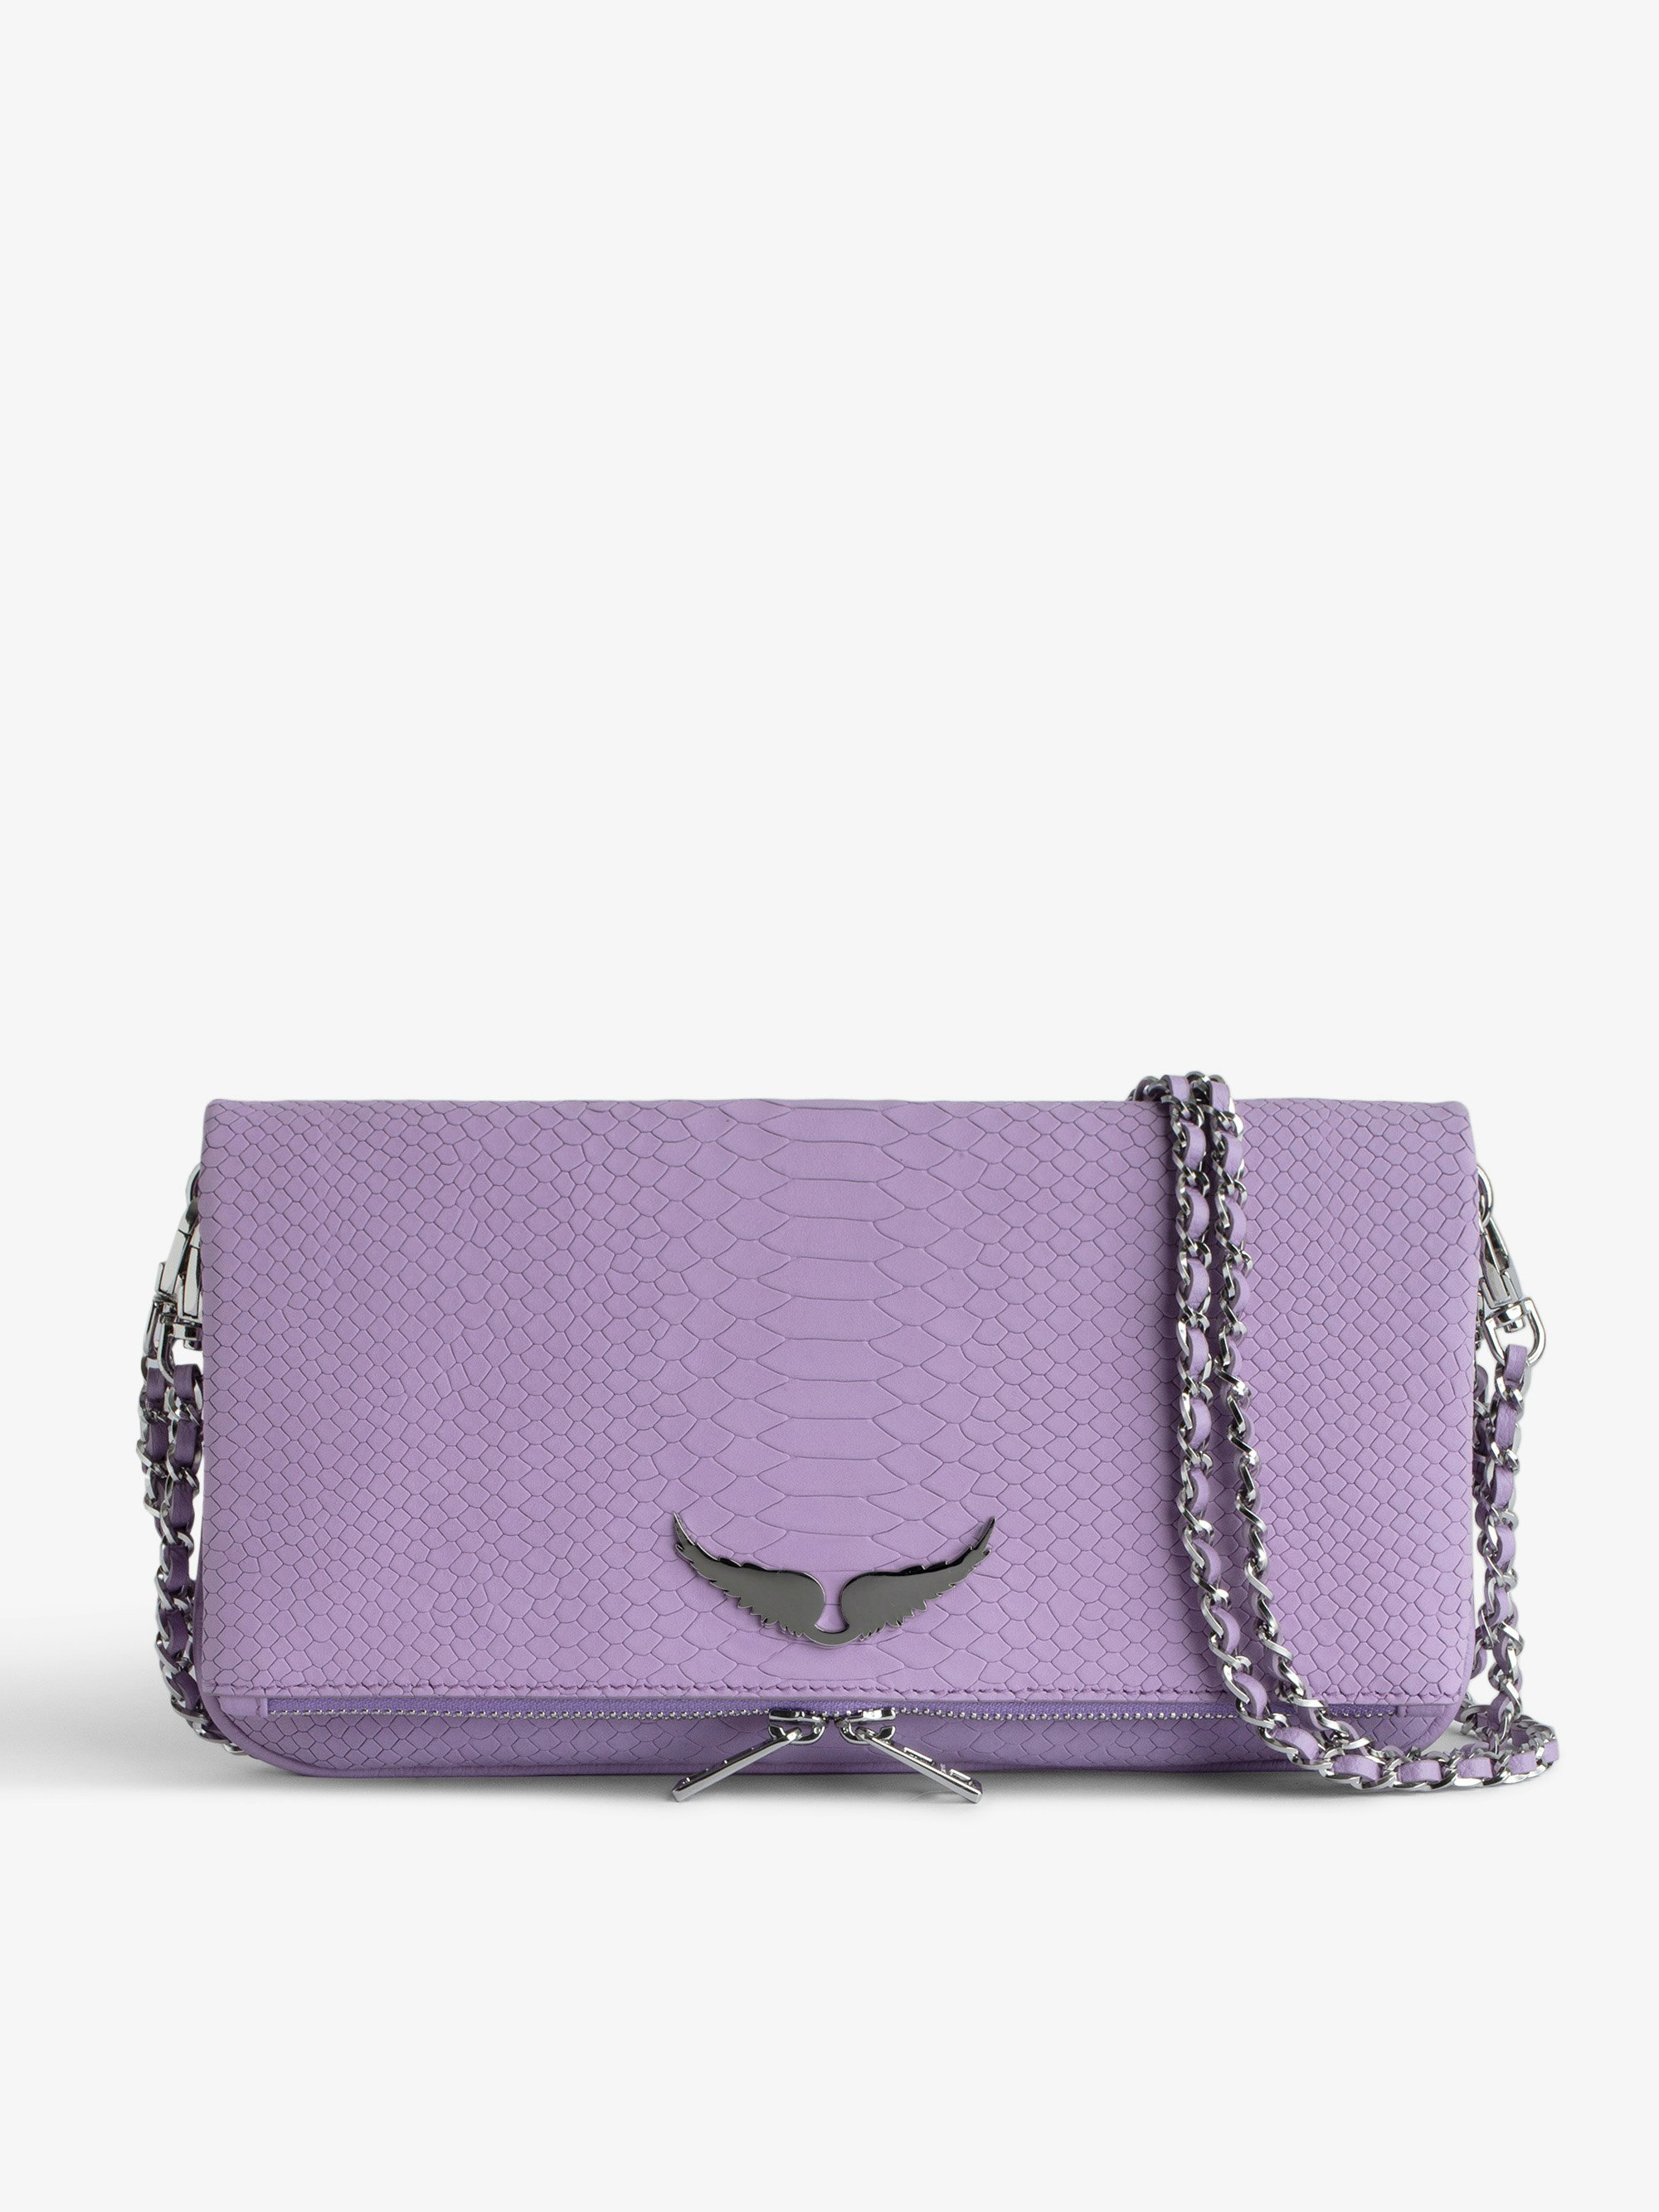 Bolso de Mano Rock Soft Savage - Bolso de mano de piel con efecto pitón en color violeta, con doble cadena de cuero y metal.